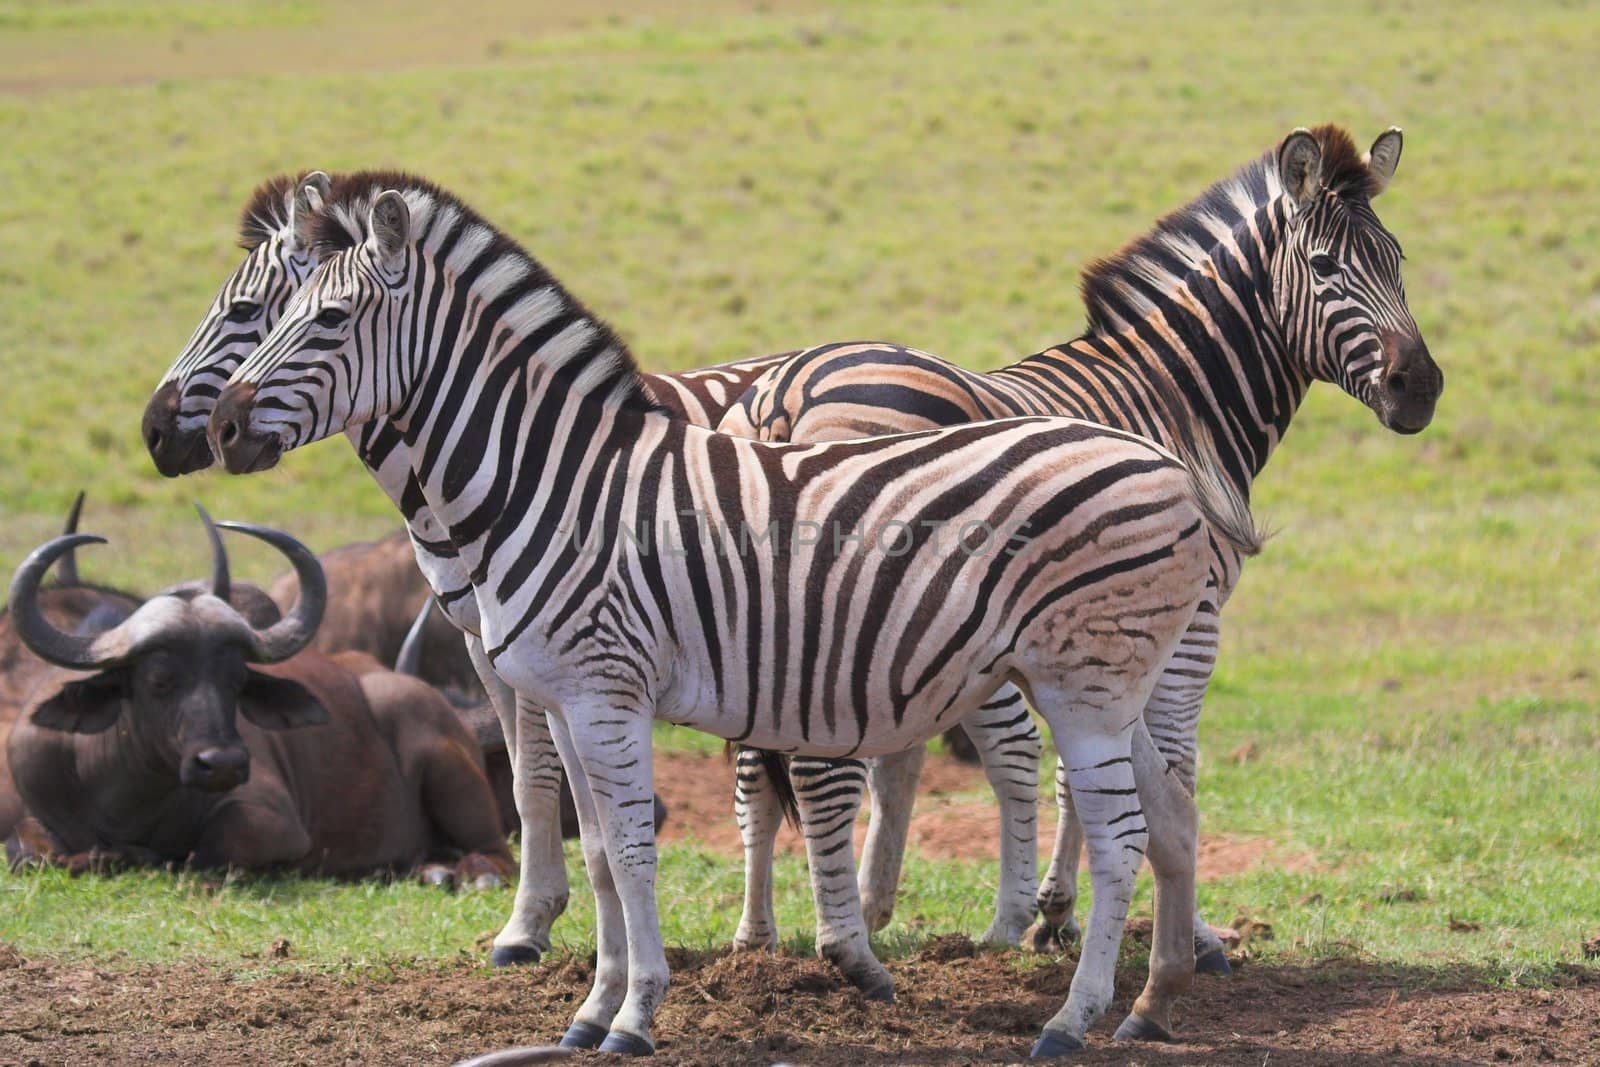 Zebra & Buffalo by nightowlza